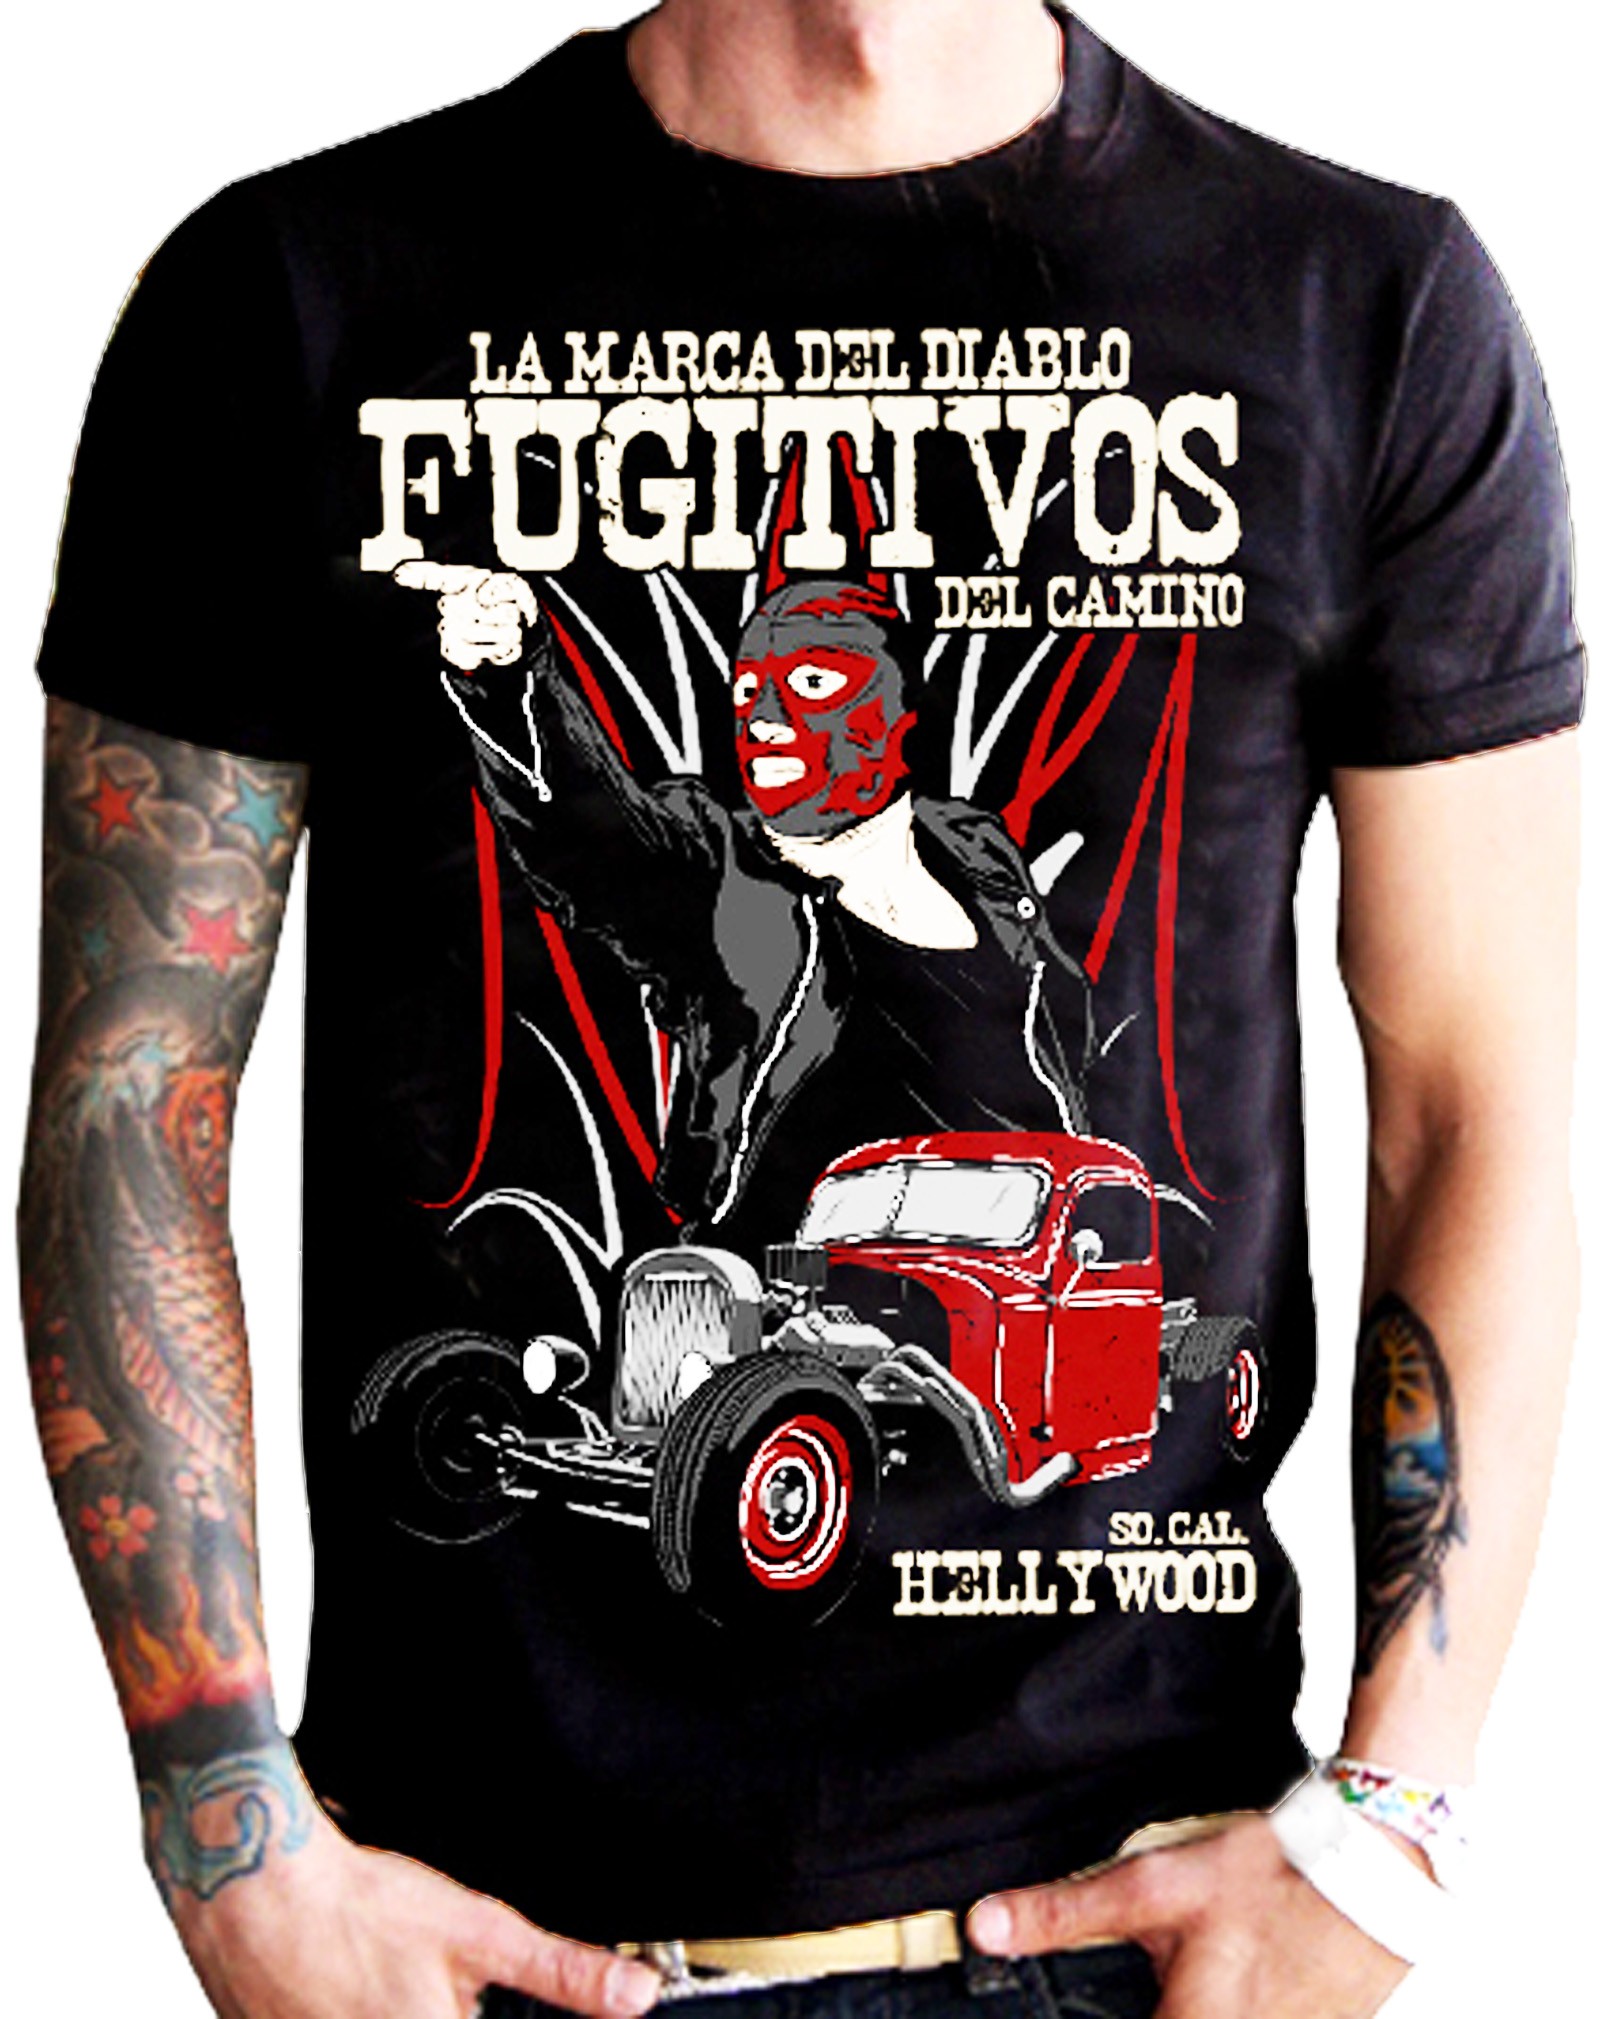 La Marca Del Diablo - Fugitivos T-Shirt Front